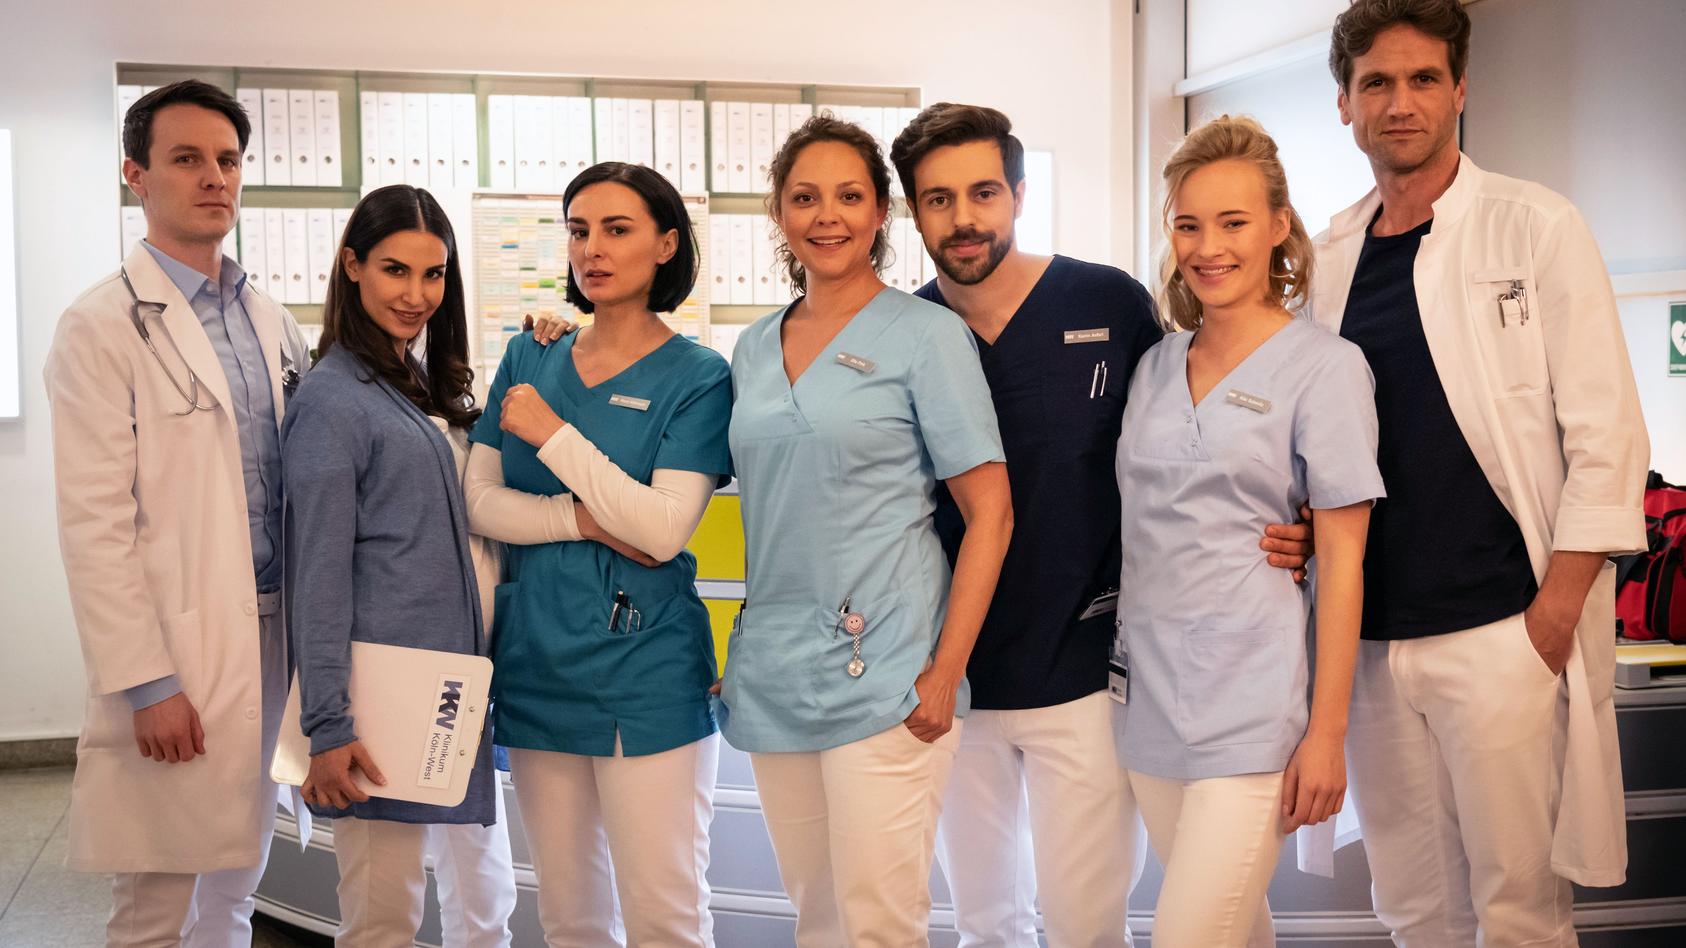 Heute haben die Dreharbeiten zur neuen RTL-Medical-Serie "Nachtschwestern" begonnen.